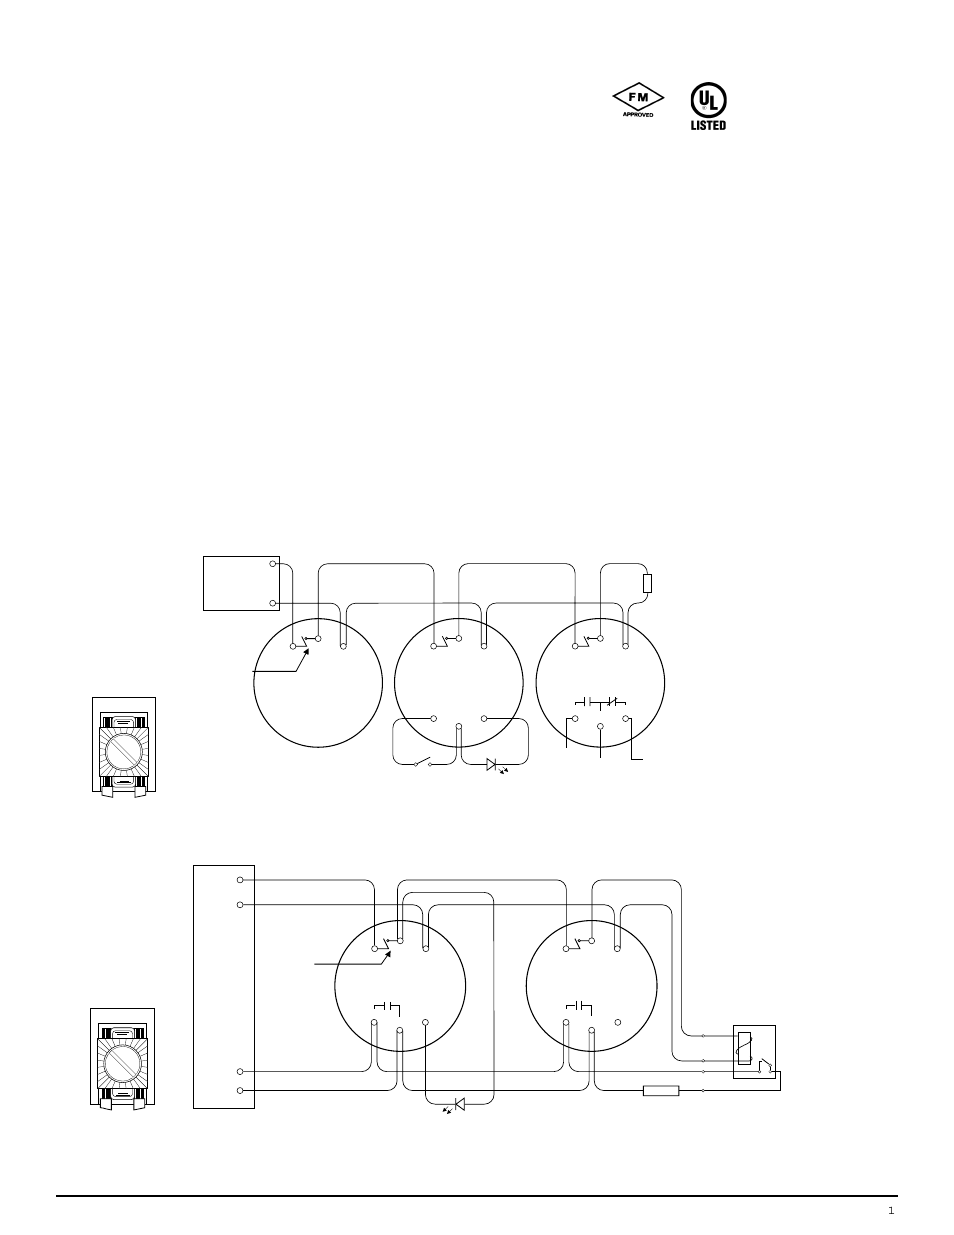 Edwards Smoke Detector Wiring Diagram | Wiring Library